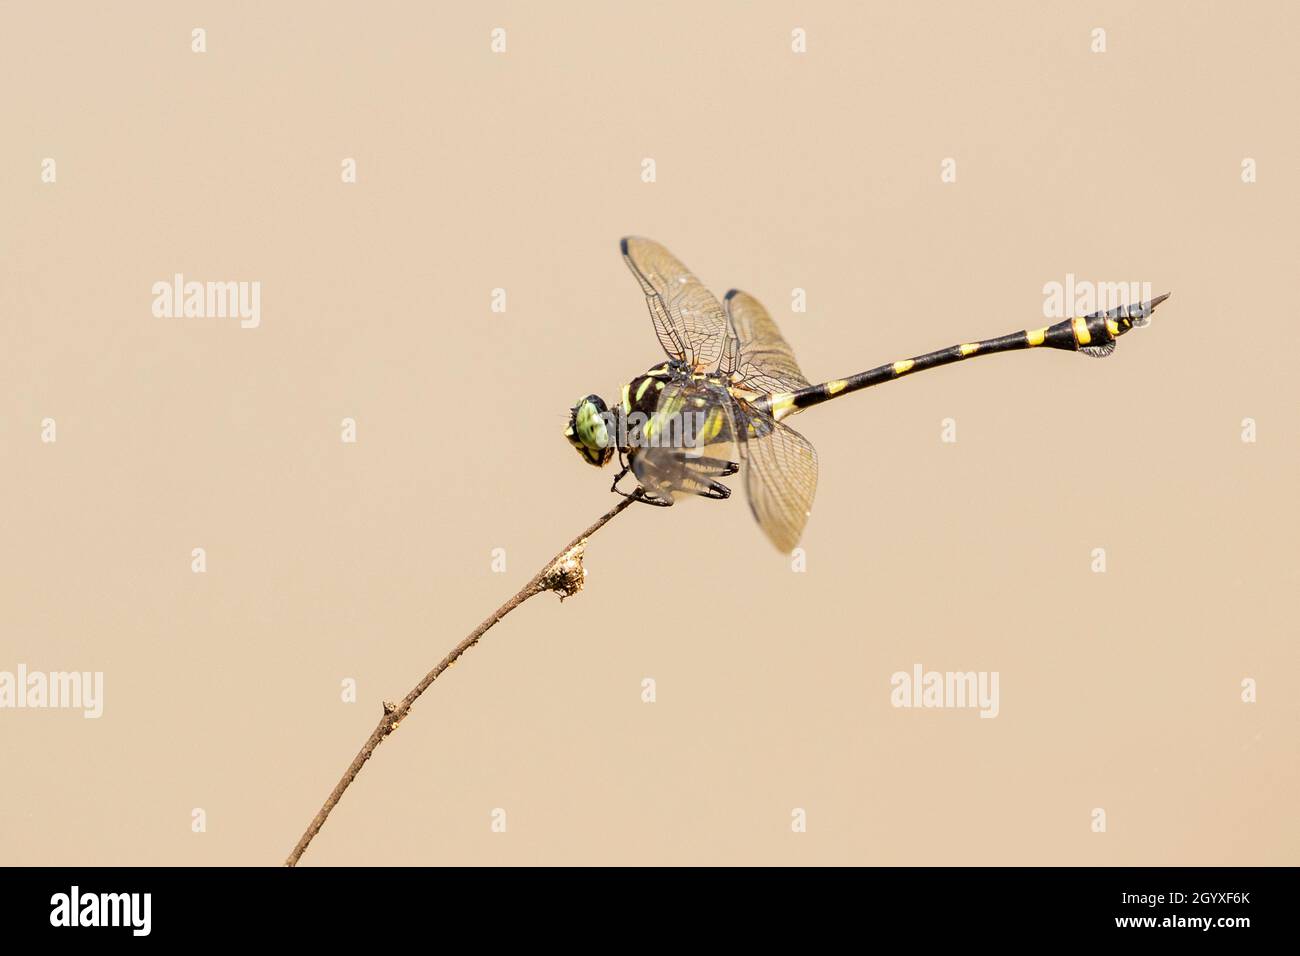 Immagine di gomphidae dragonfly (Ictinogomphus Decoratus) su rami secchi su sfondo naturale. Insetto. Animale. Foto Stock